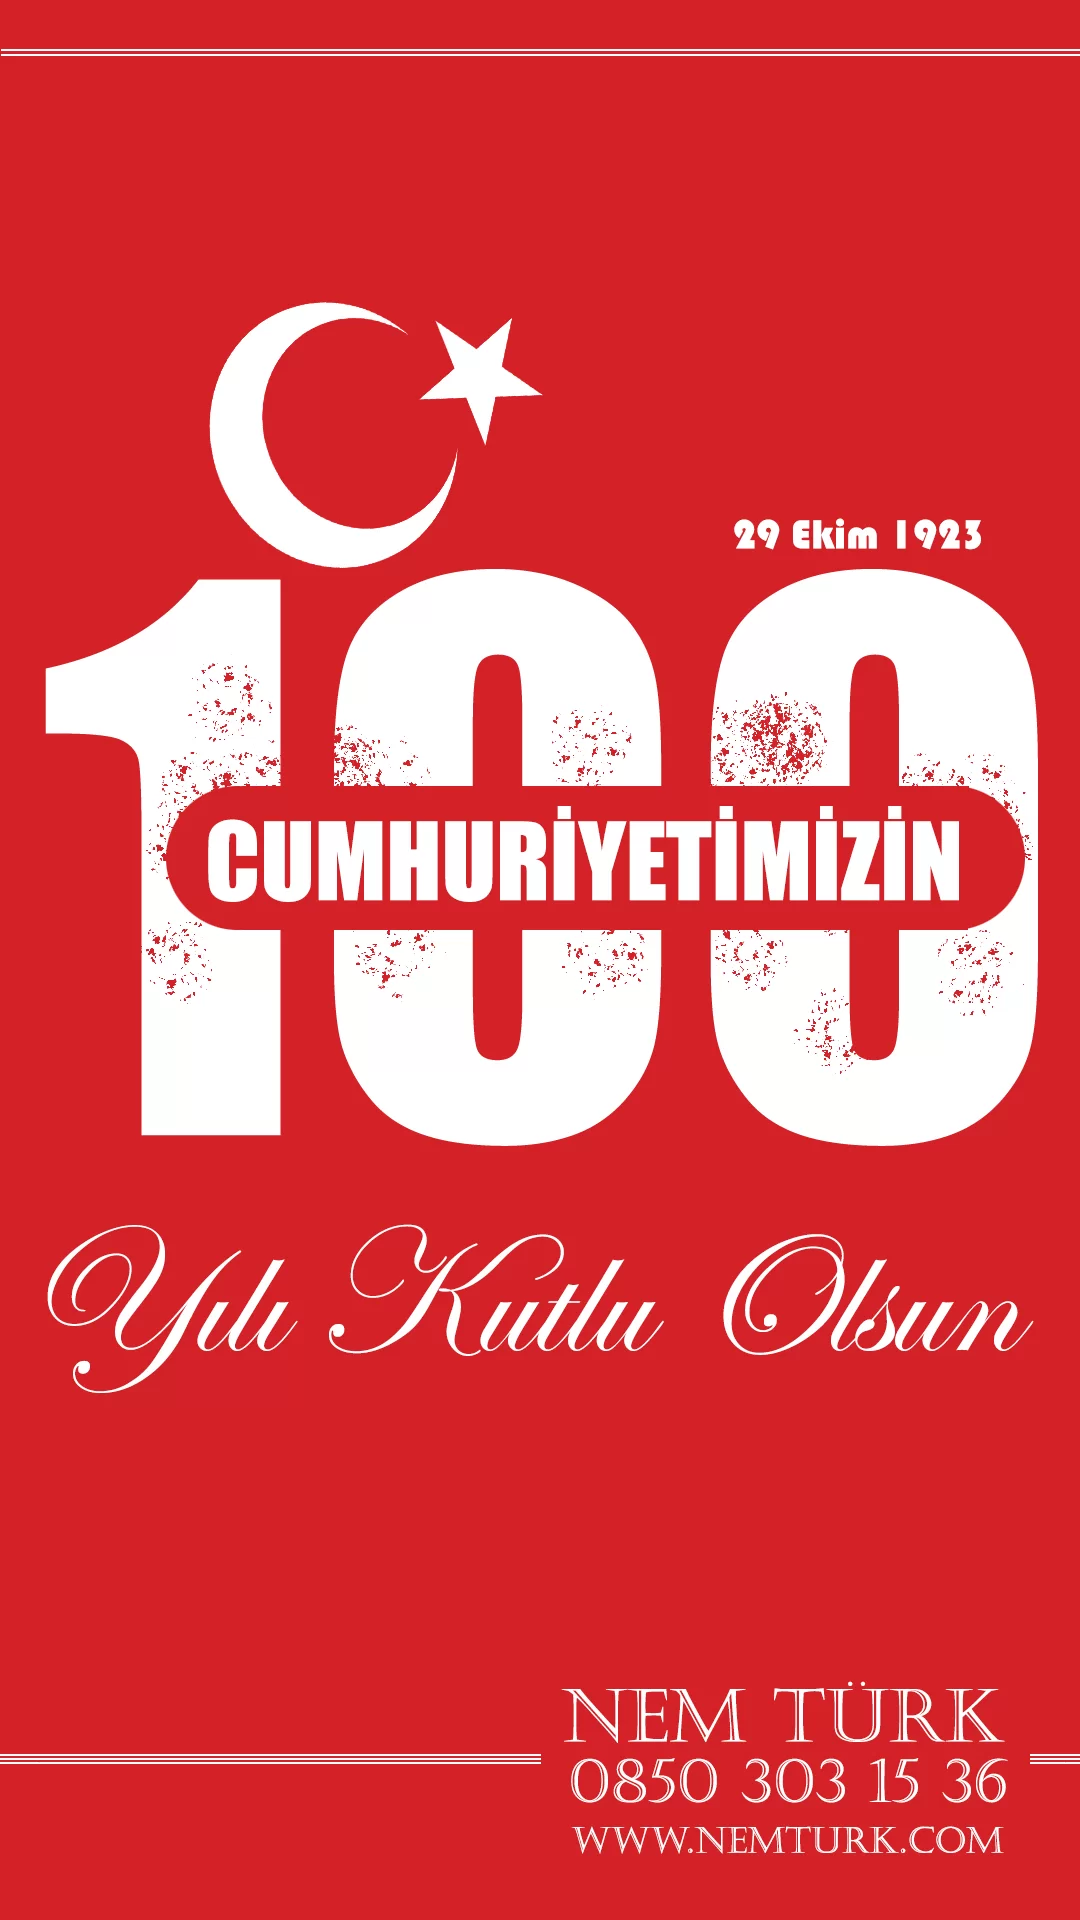 Nem Türk Türkiye Yüzüncü Yıl Kutlaması